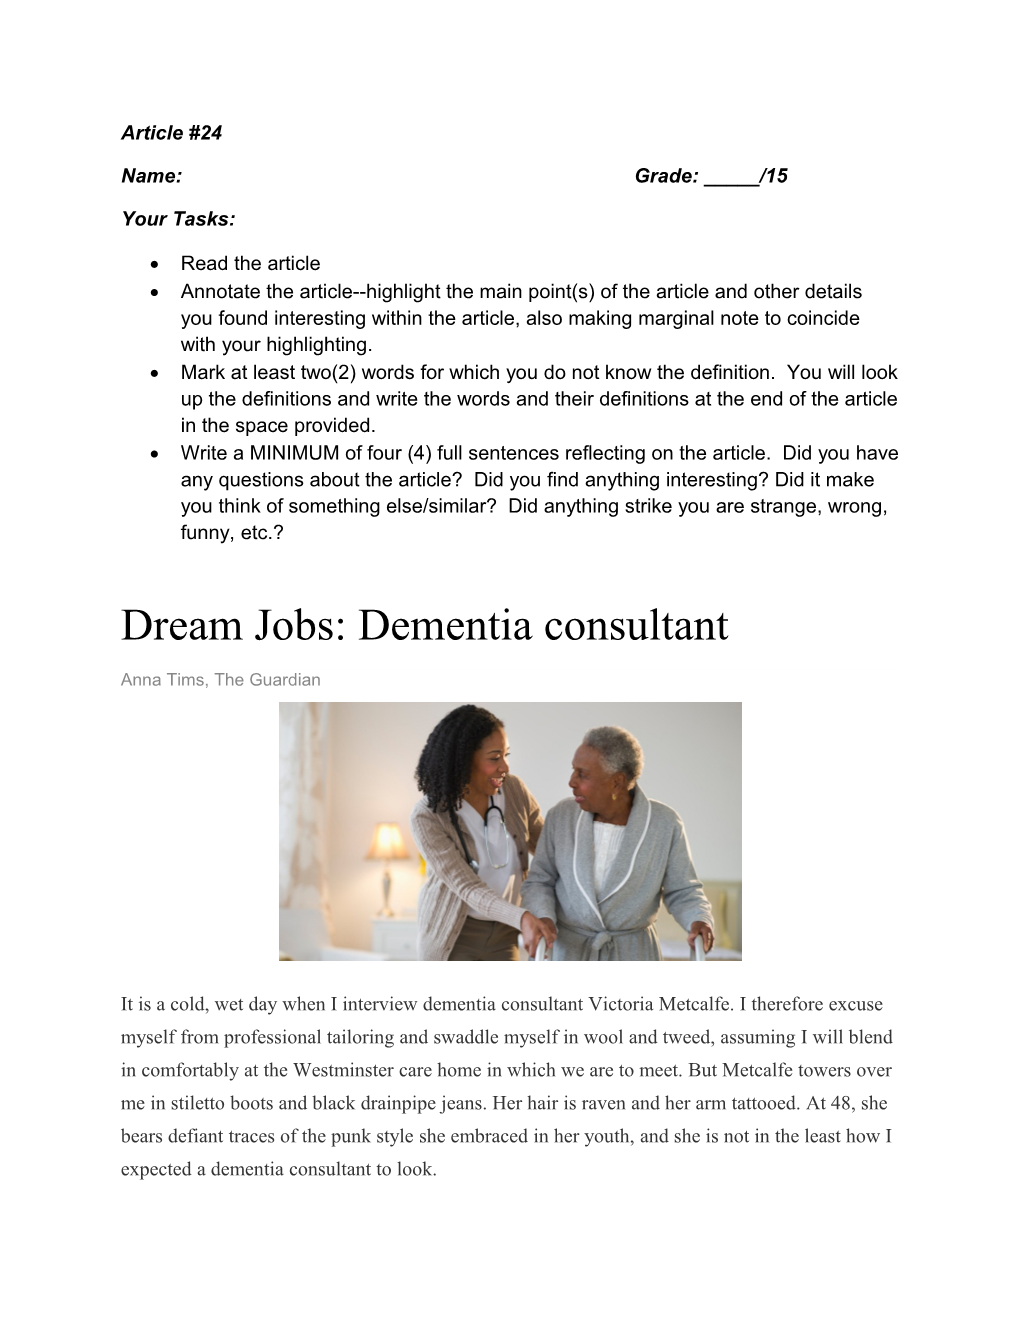 Dream Jobs: Dementia Consultant